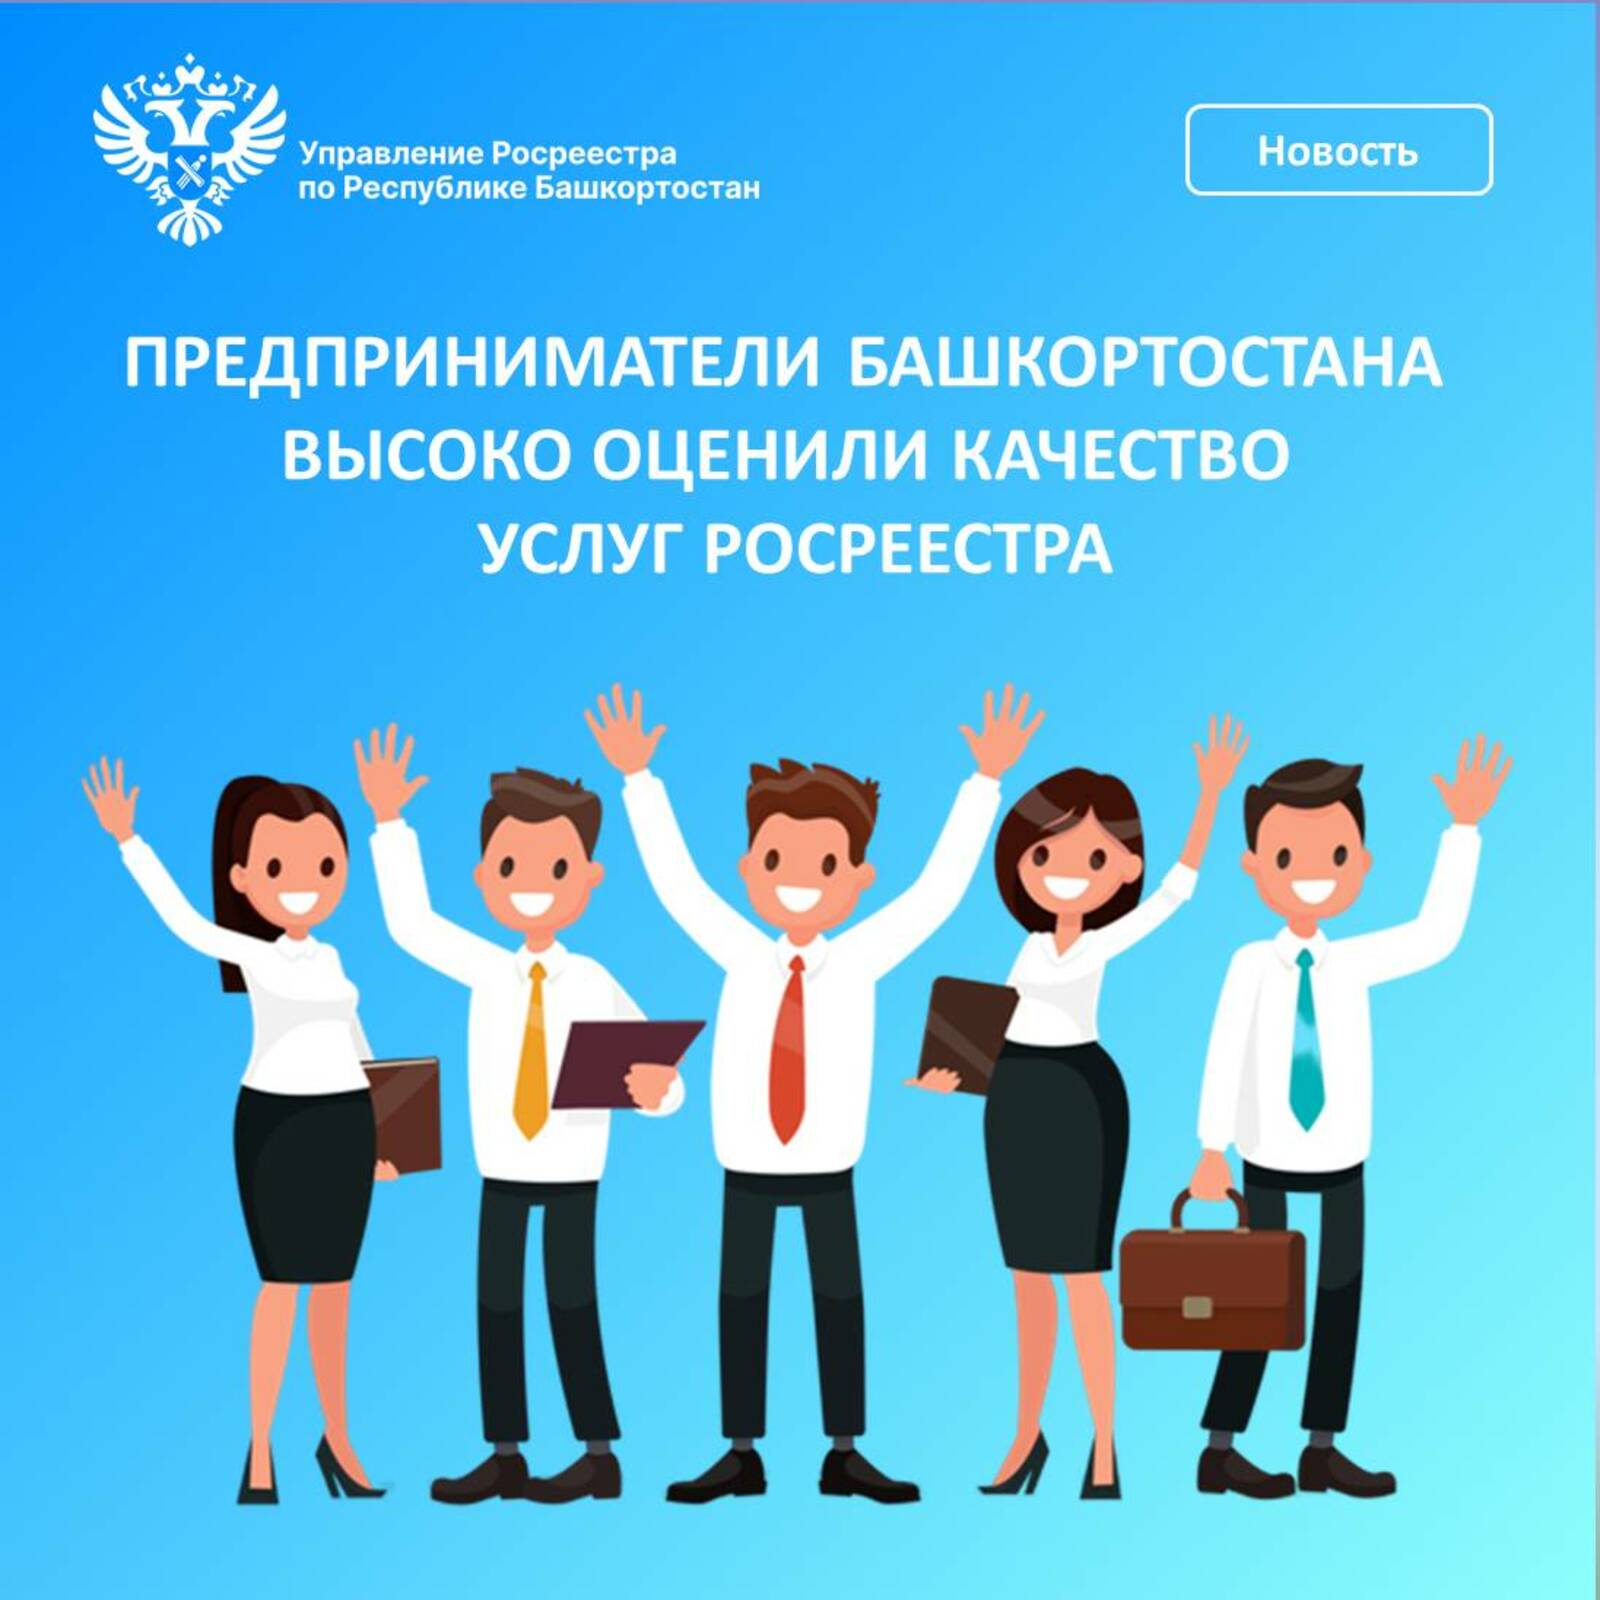 Предприниматели Башкортостана высоко оценили качество услуг Росреестра